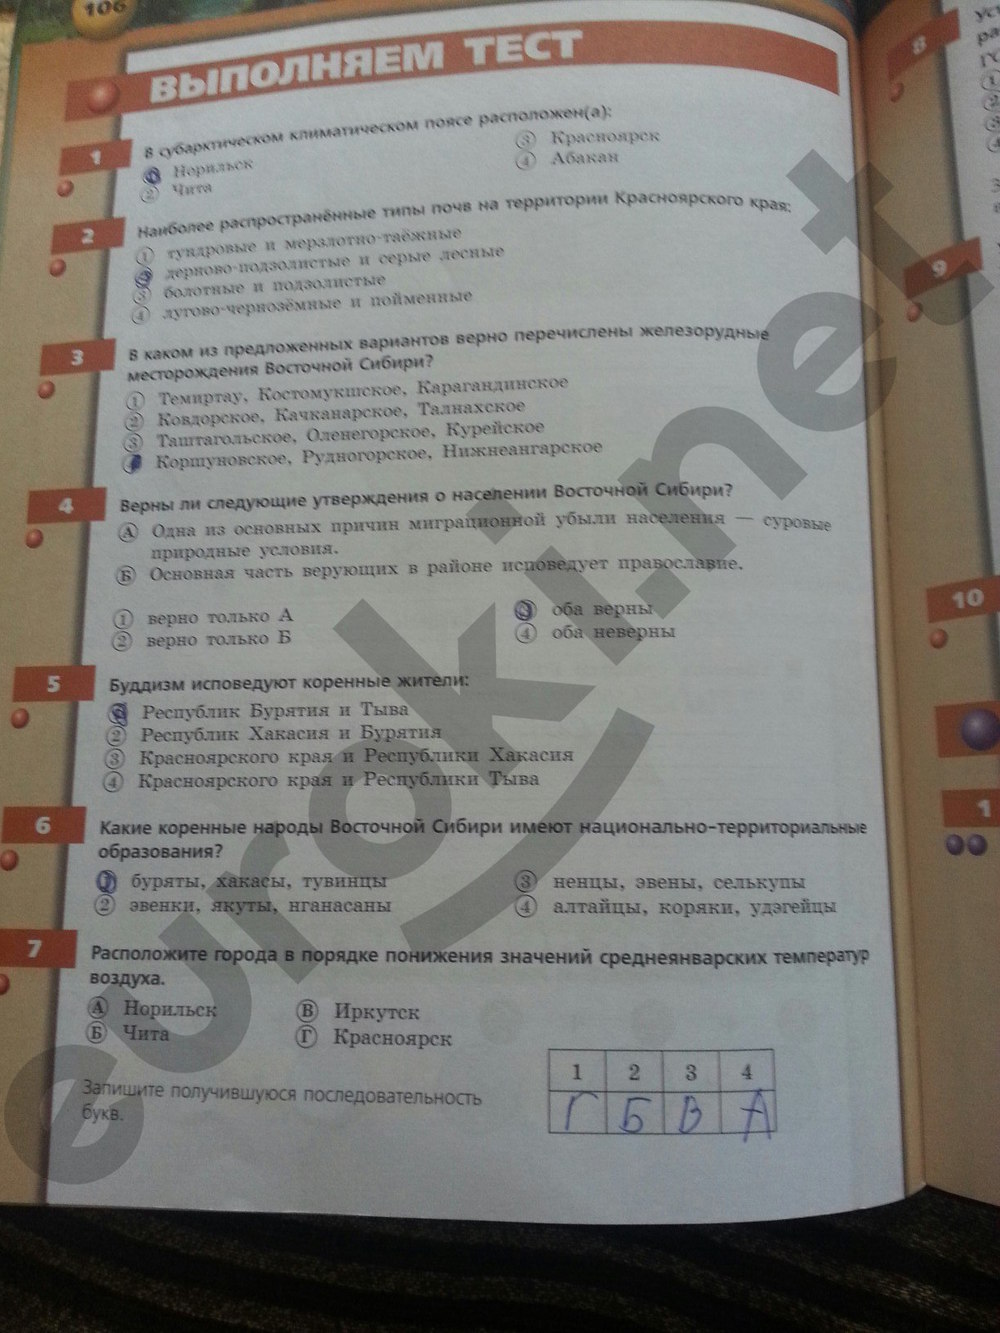 гдз 9 класс тетрадь-тренажер страница 106 география Ходова, Ольховая